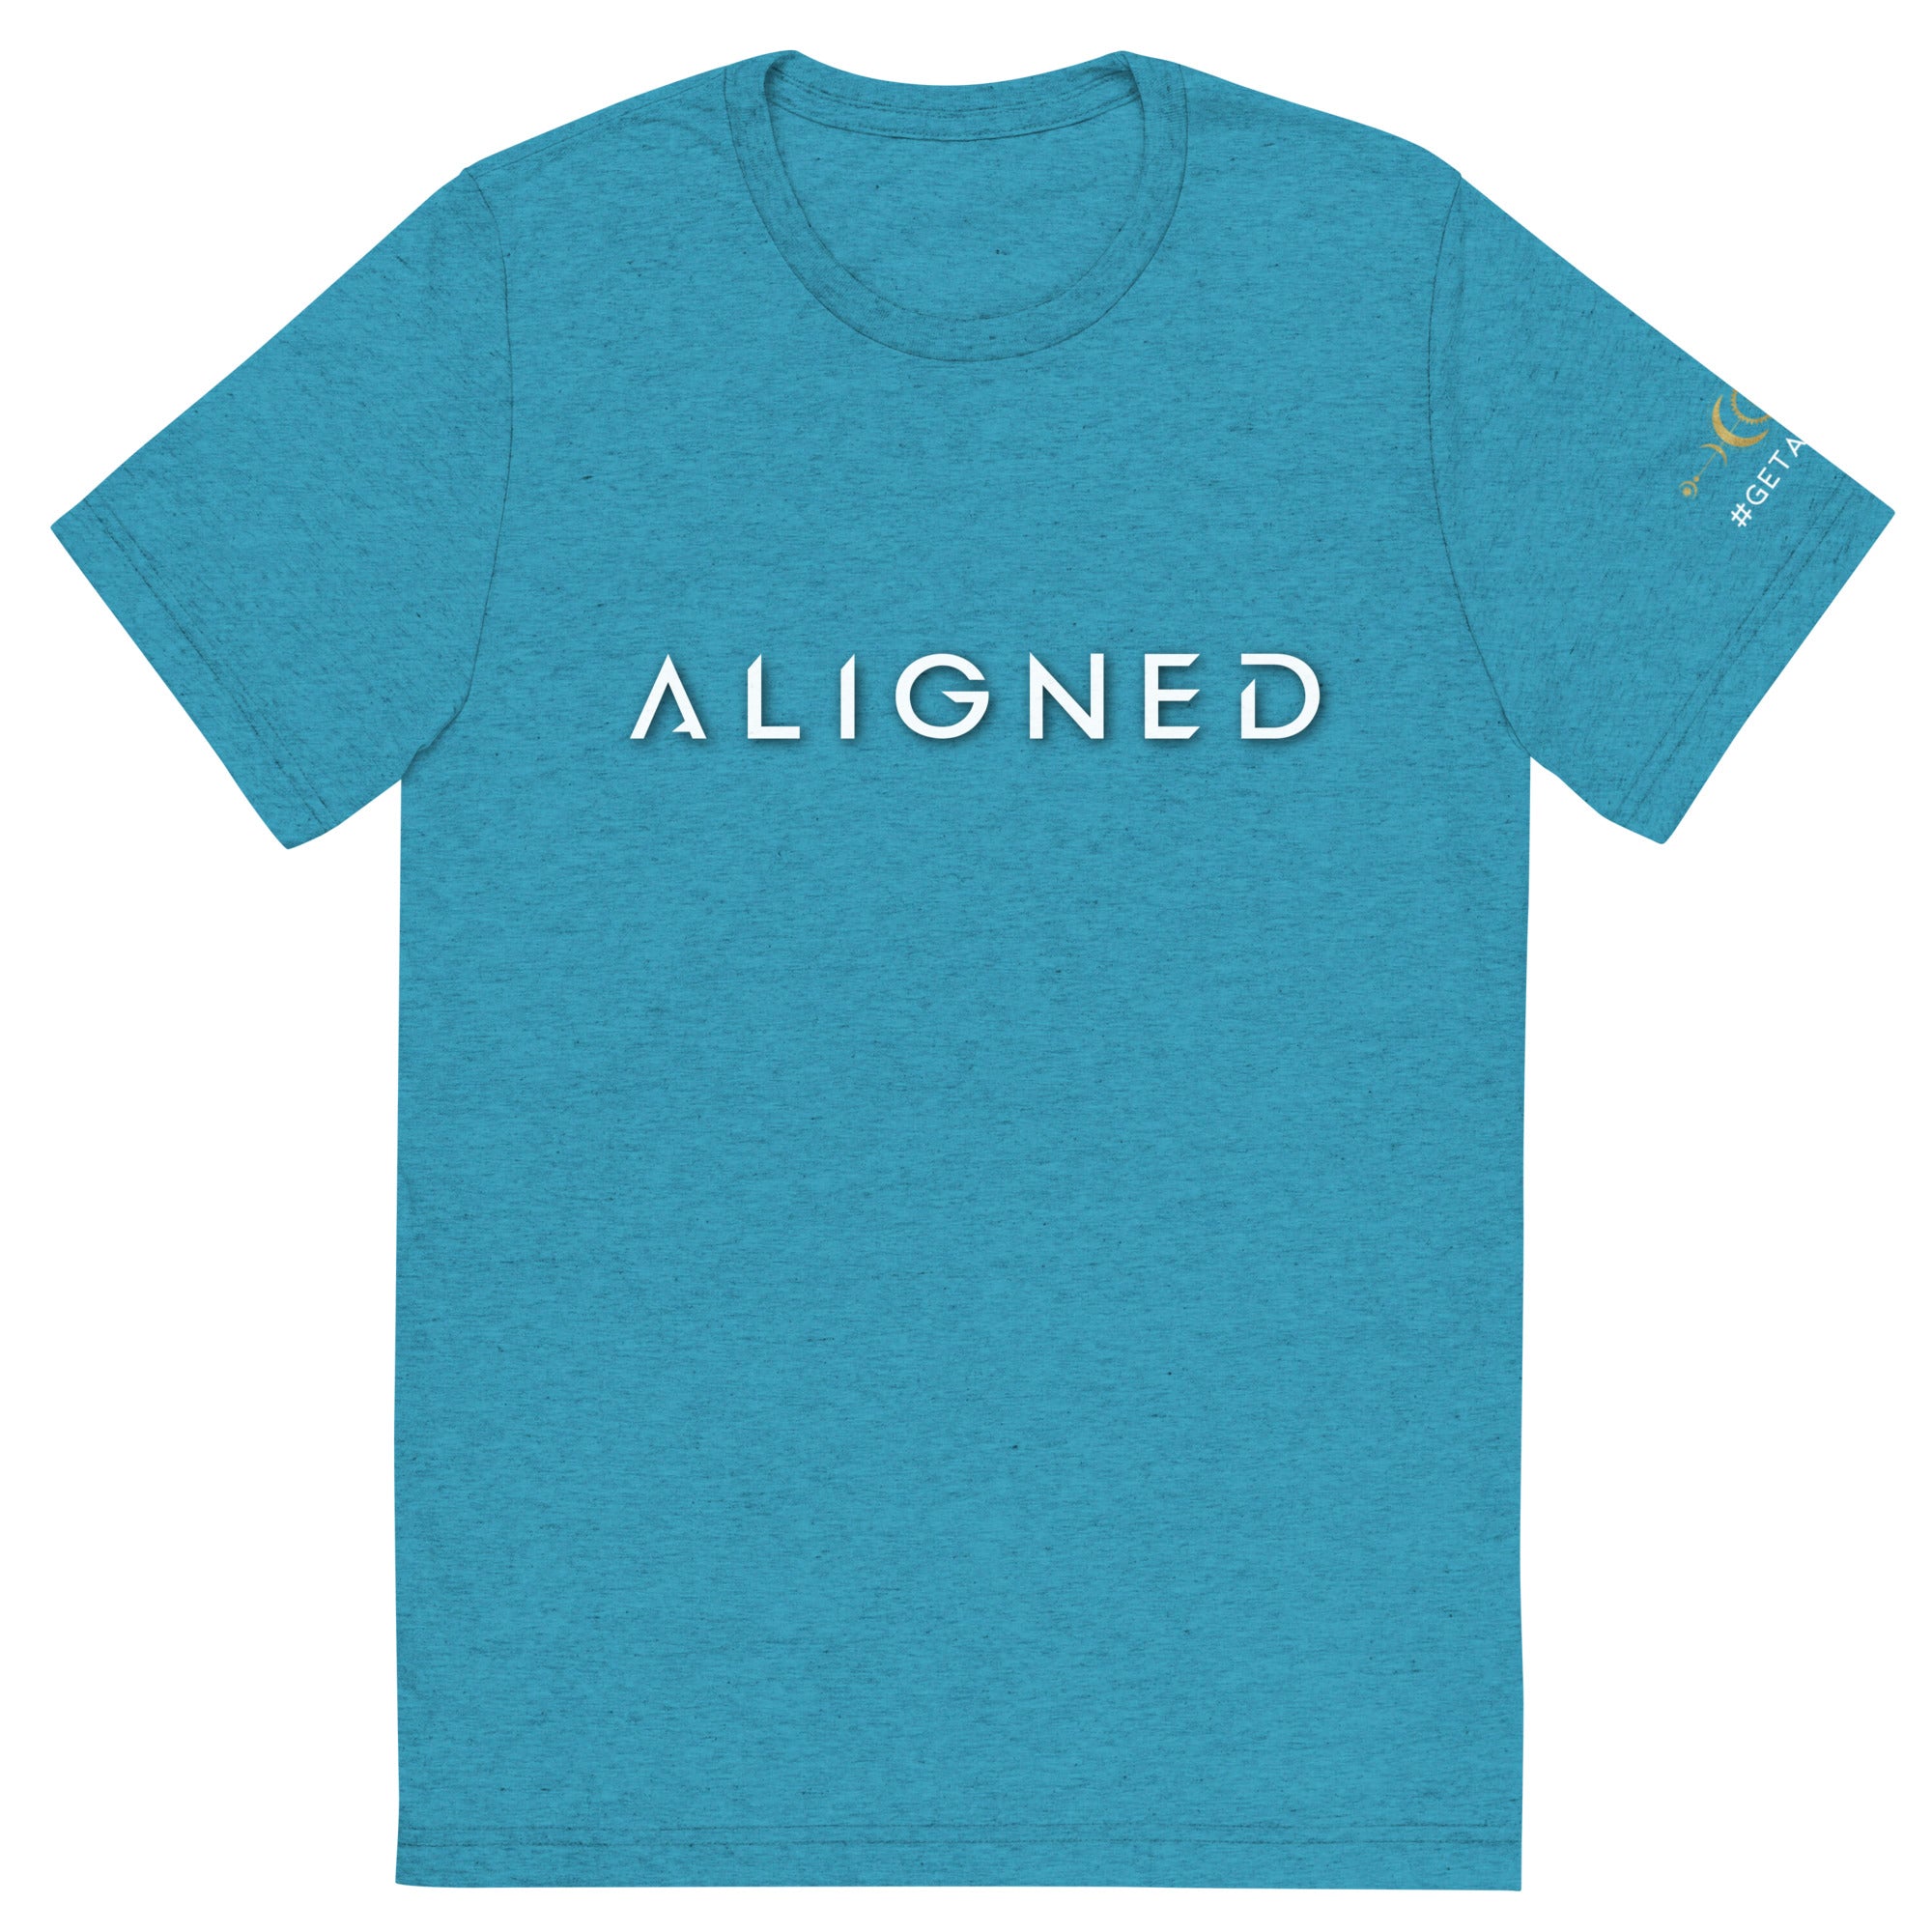 ALIGNED Unisex Short Sleeve T-Shirt